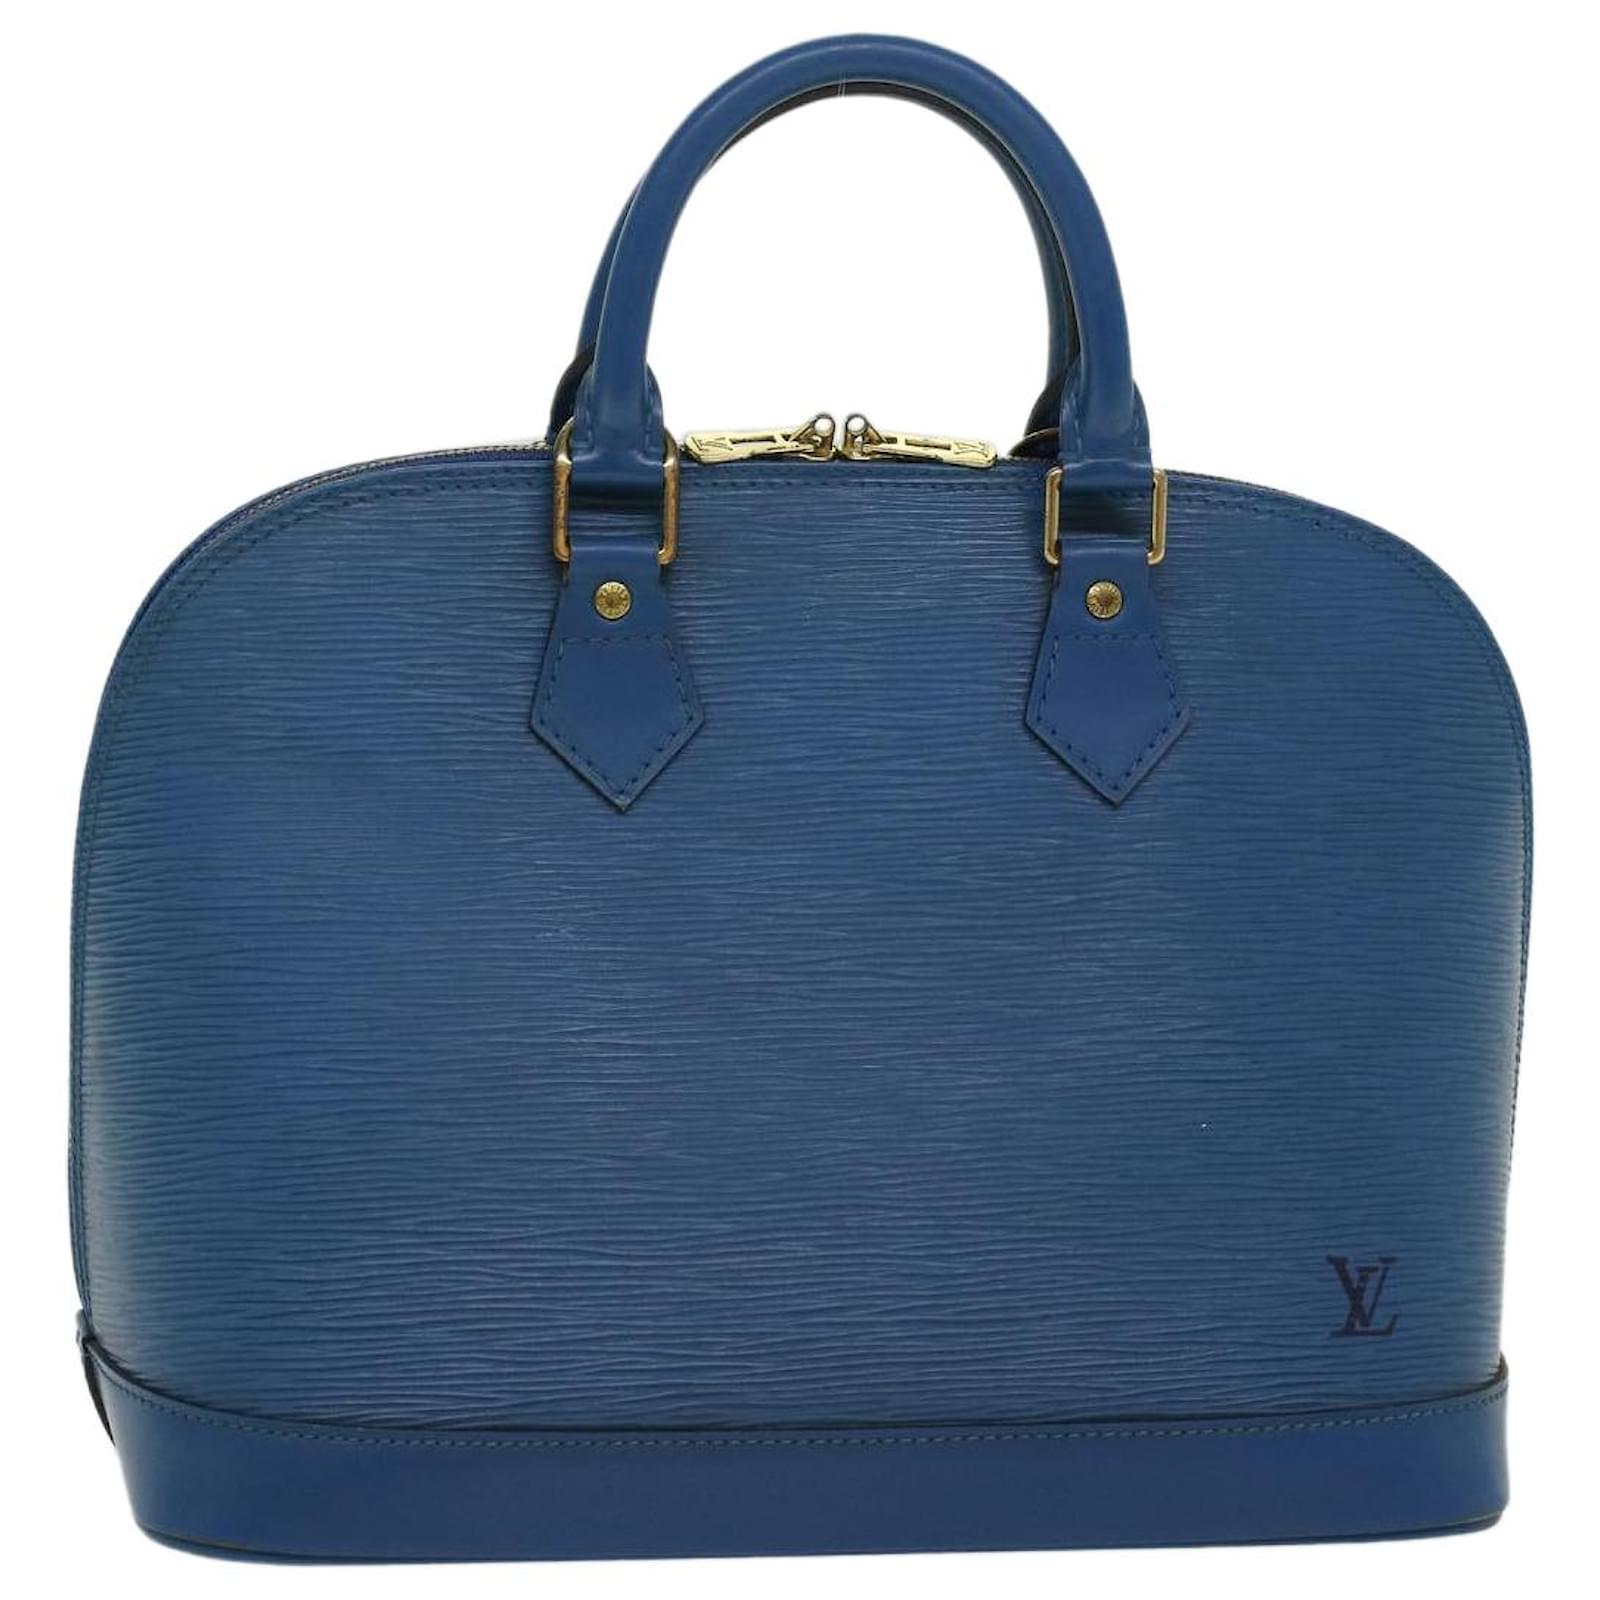 Louis Vuitton Tassil Yellow Epi Leather Alma PM Bag Louis Vuitton